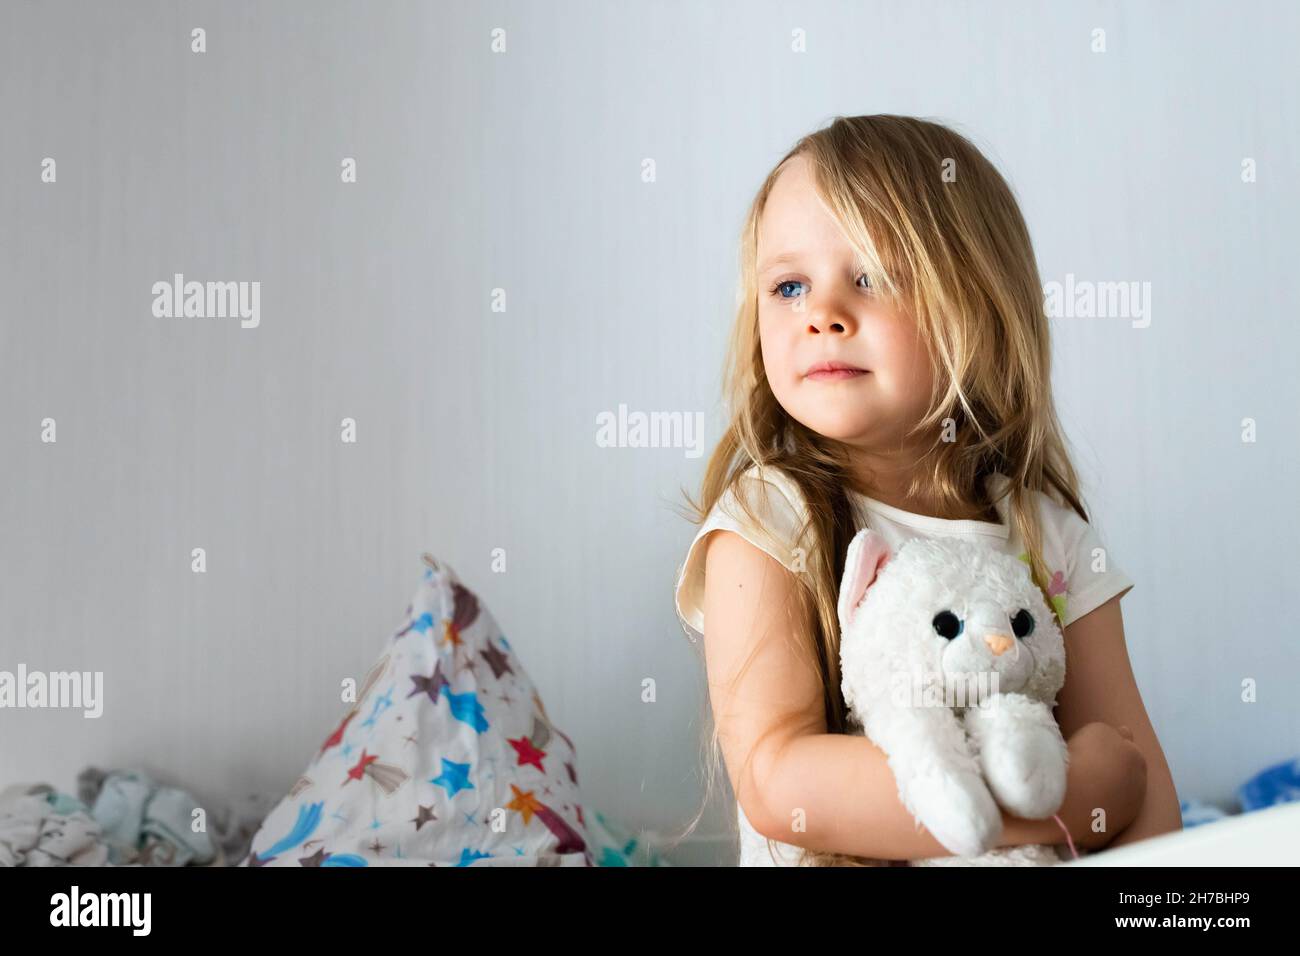 Ritratto di una bambina nella stanza dei bambini che abbraccia un giocattolo. Sorridendo sullo sfondo della camera. Foto Stock